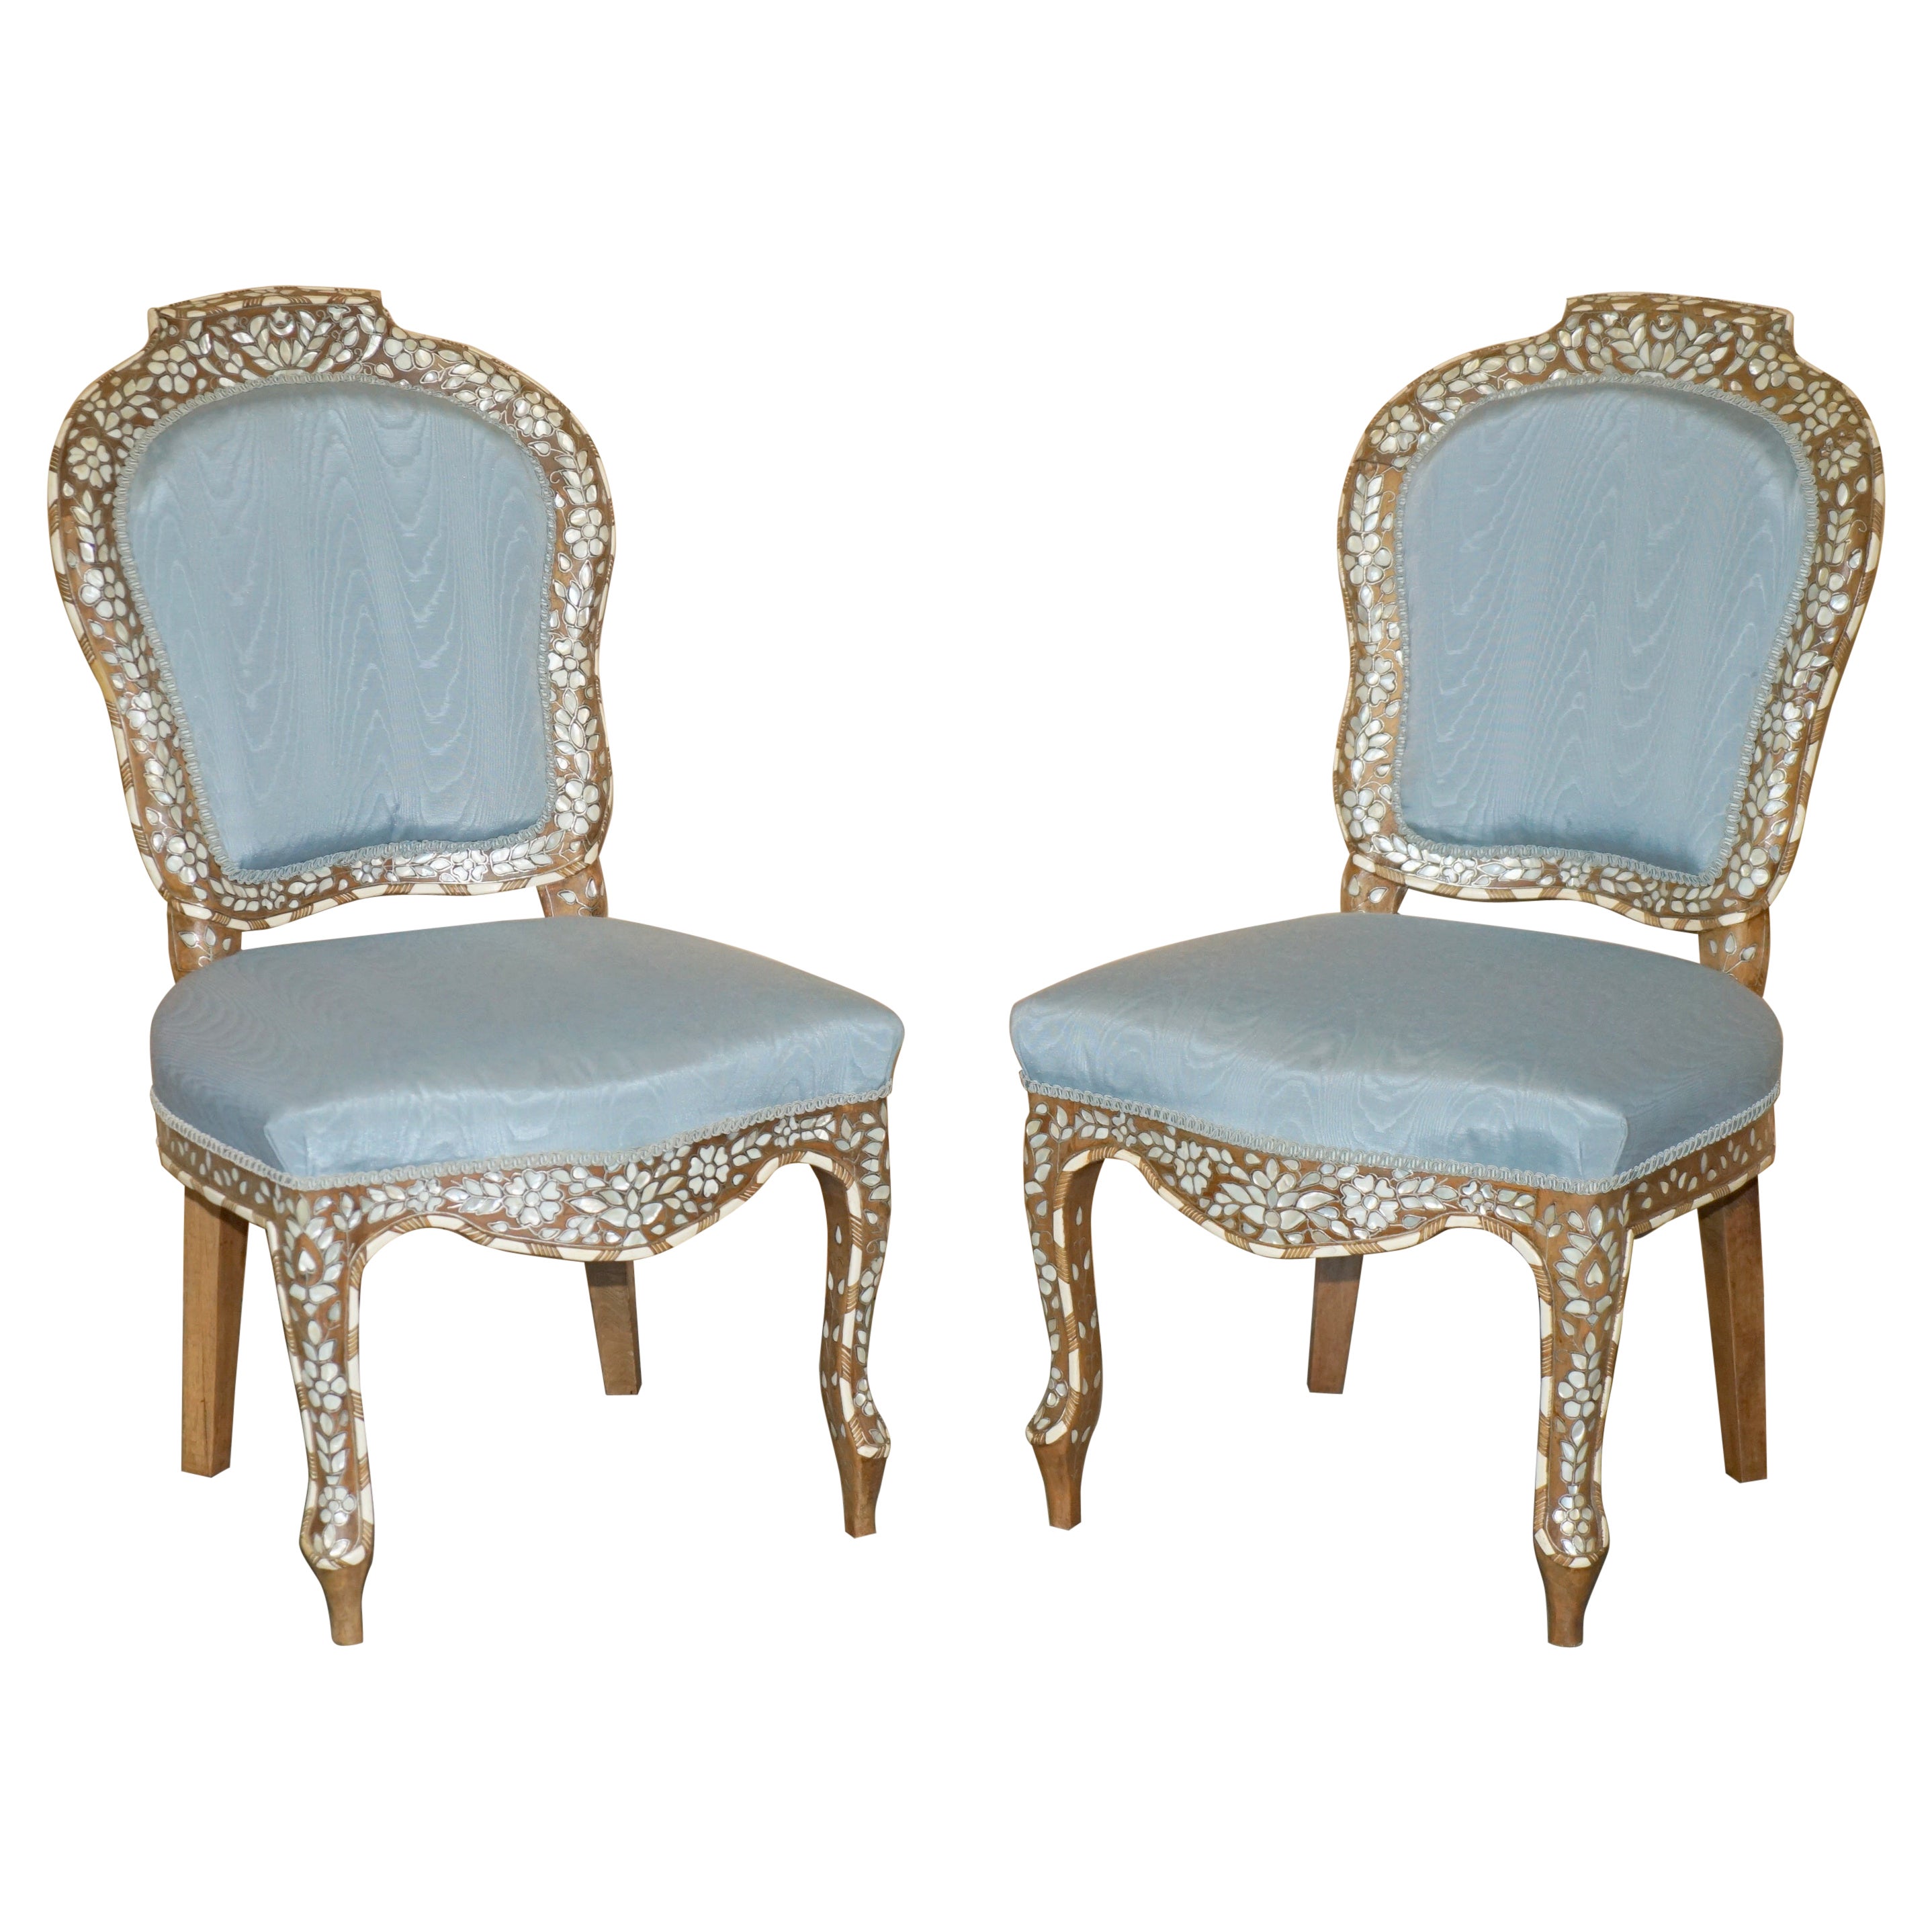 Sublime paire de chaises d'appoint anciennes en bois de perle avec cadres en bois dur